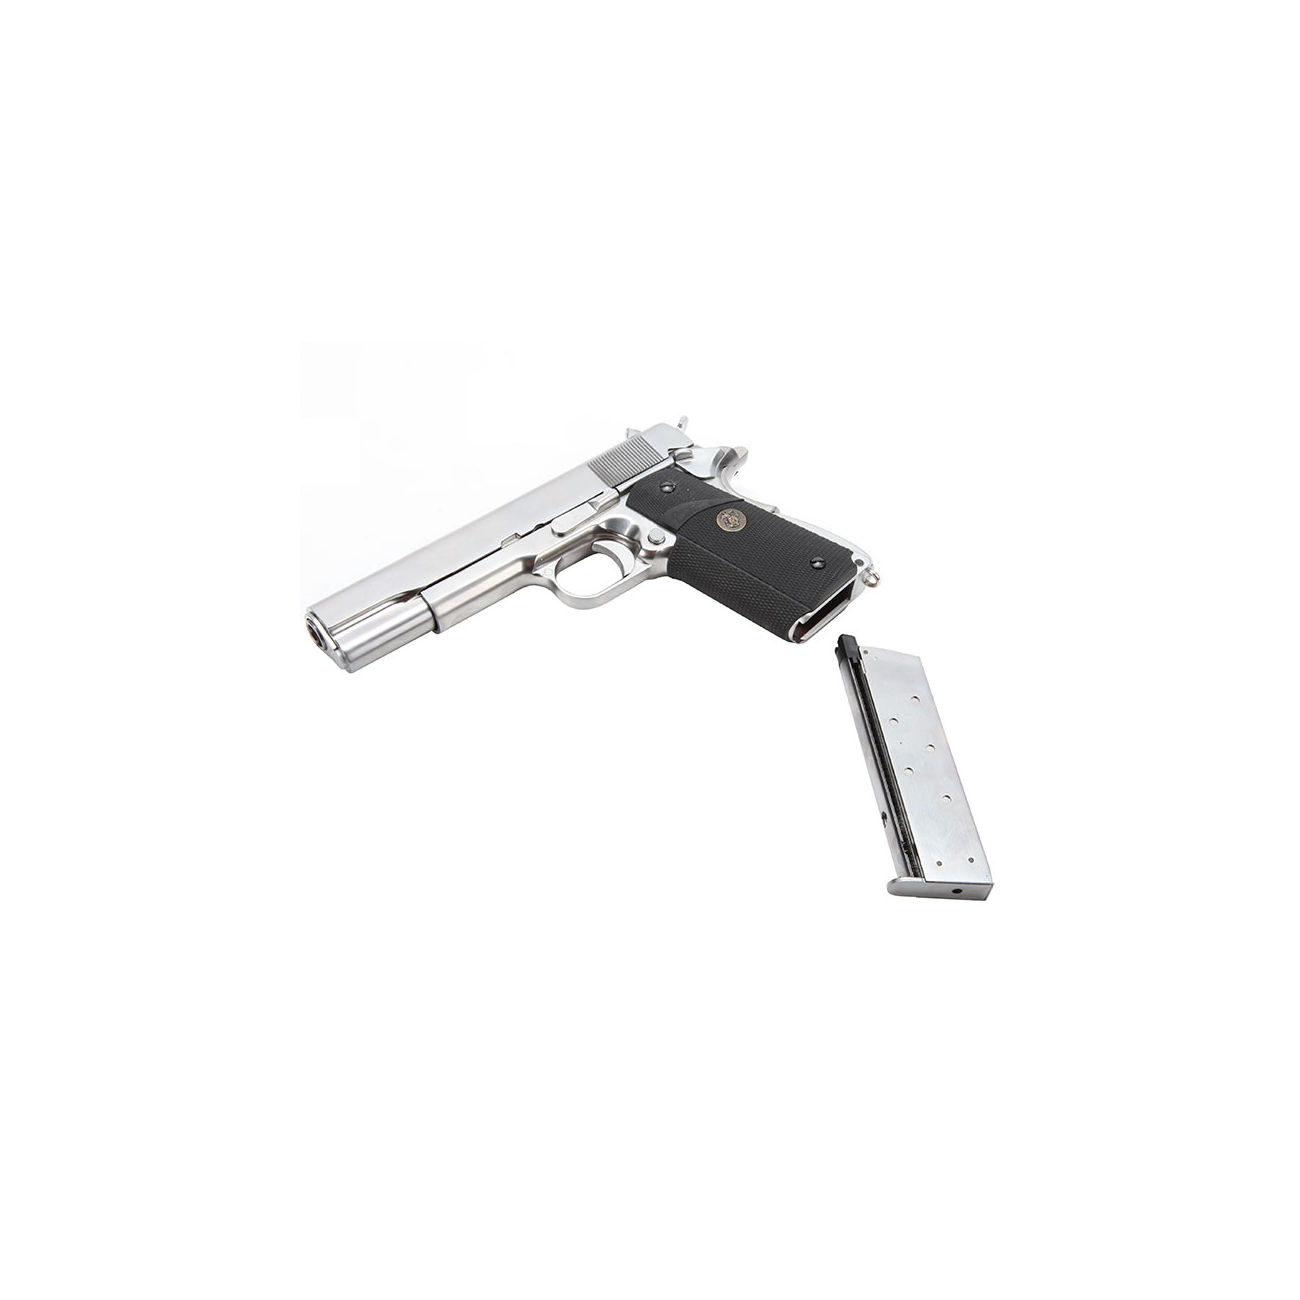 Wei-ETech M1911 Pro Grip Vollmetall GBB 6mm BB Satin-Chrome Bild 4